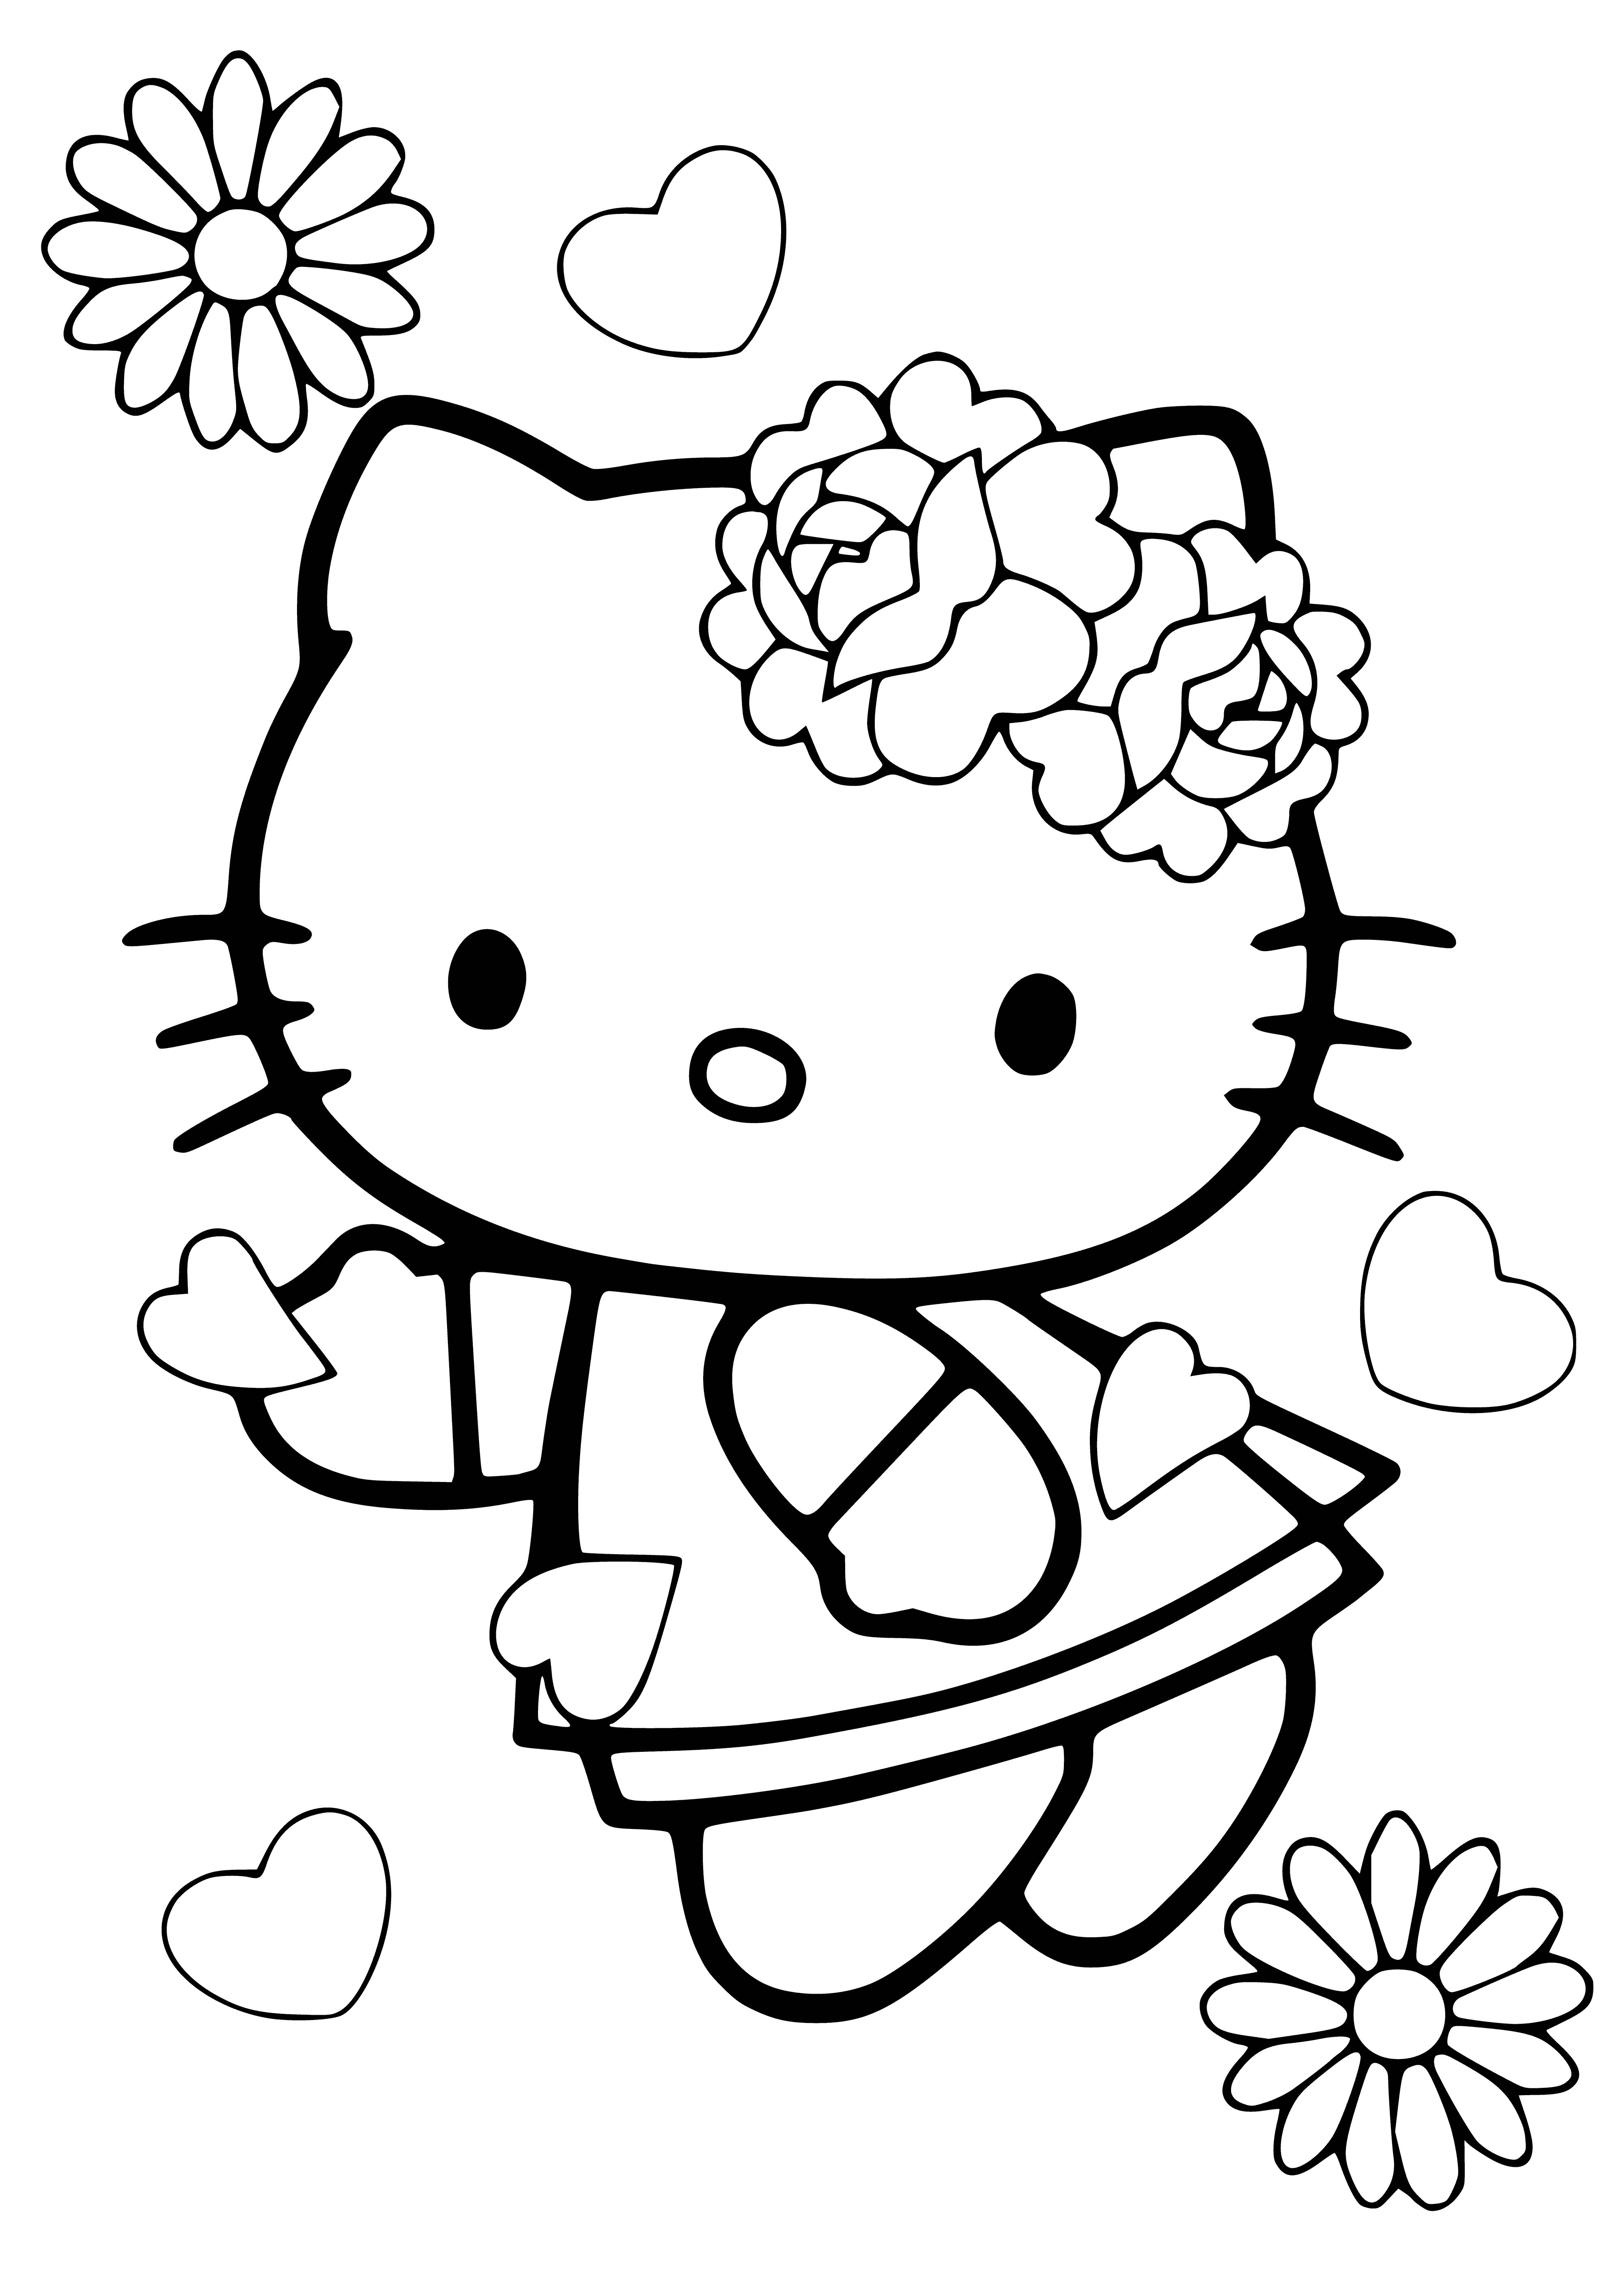 Merhaba kedicik boyama sayfası